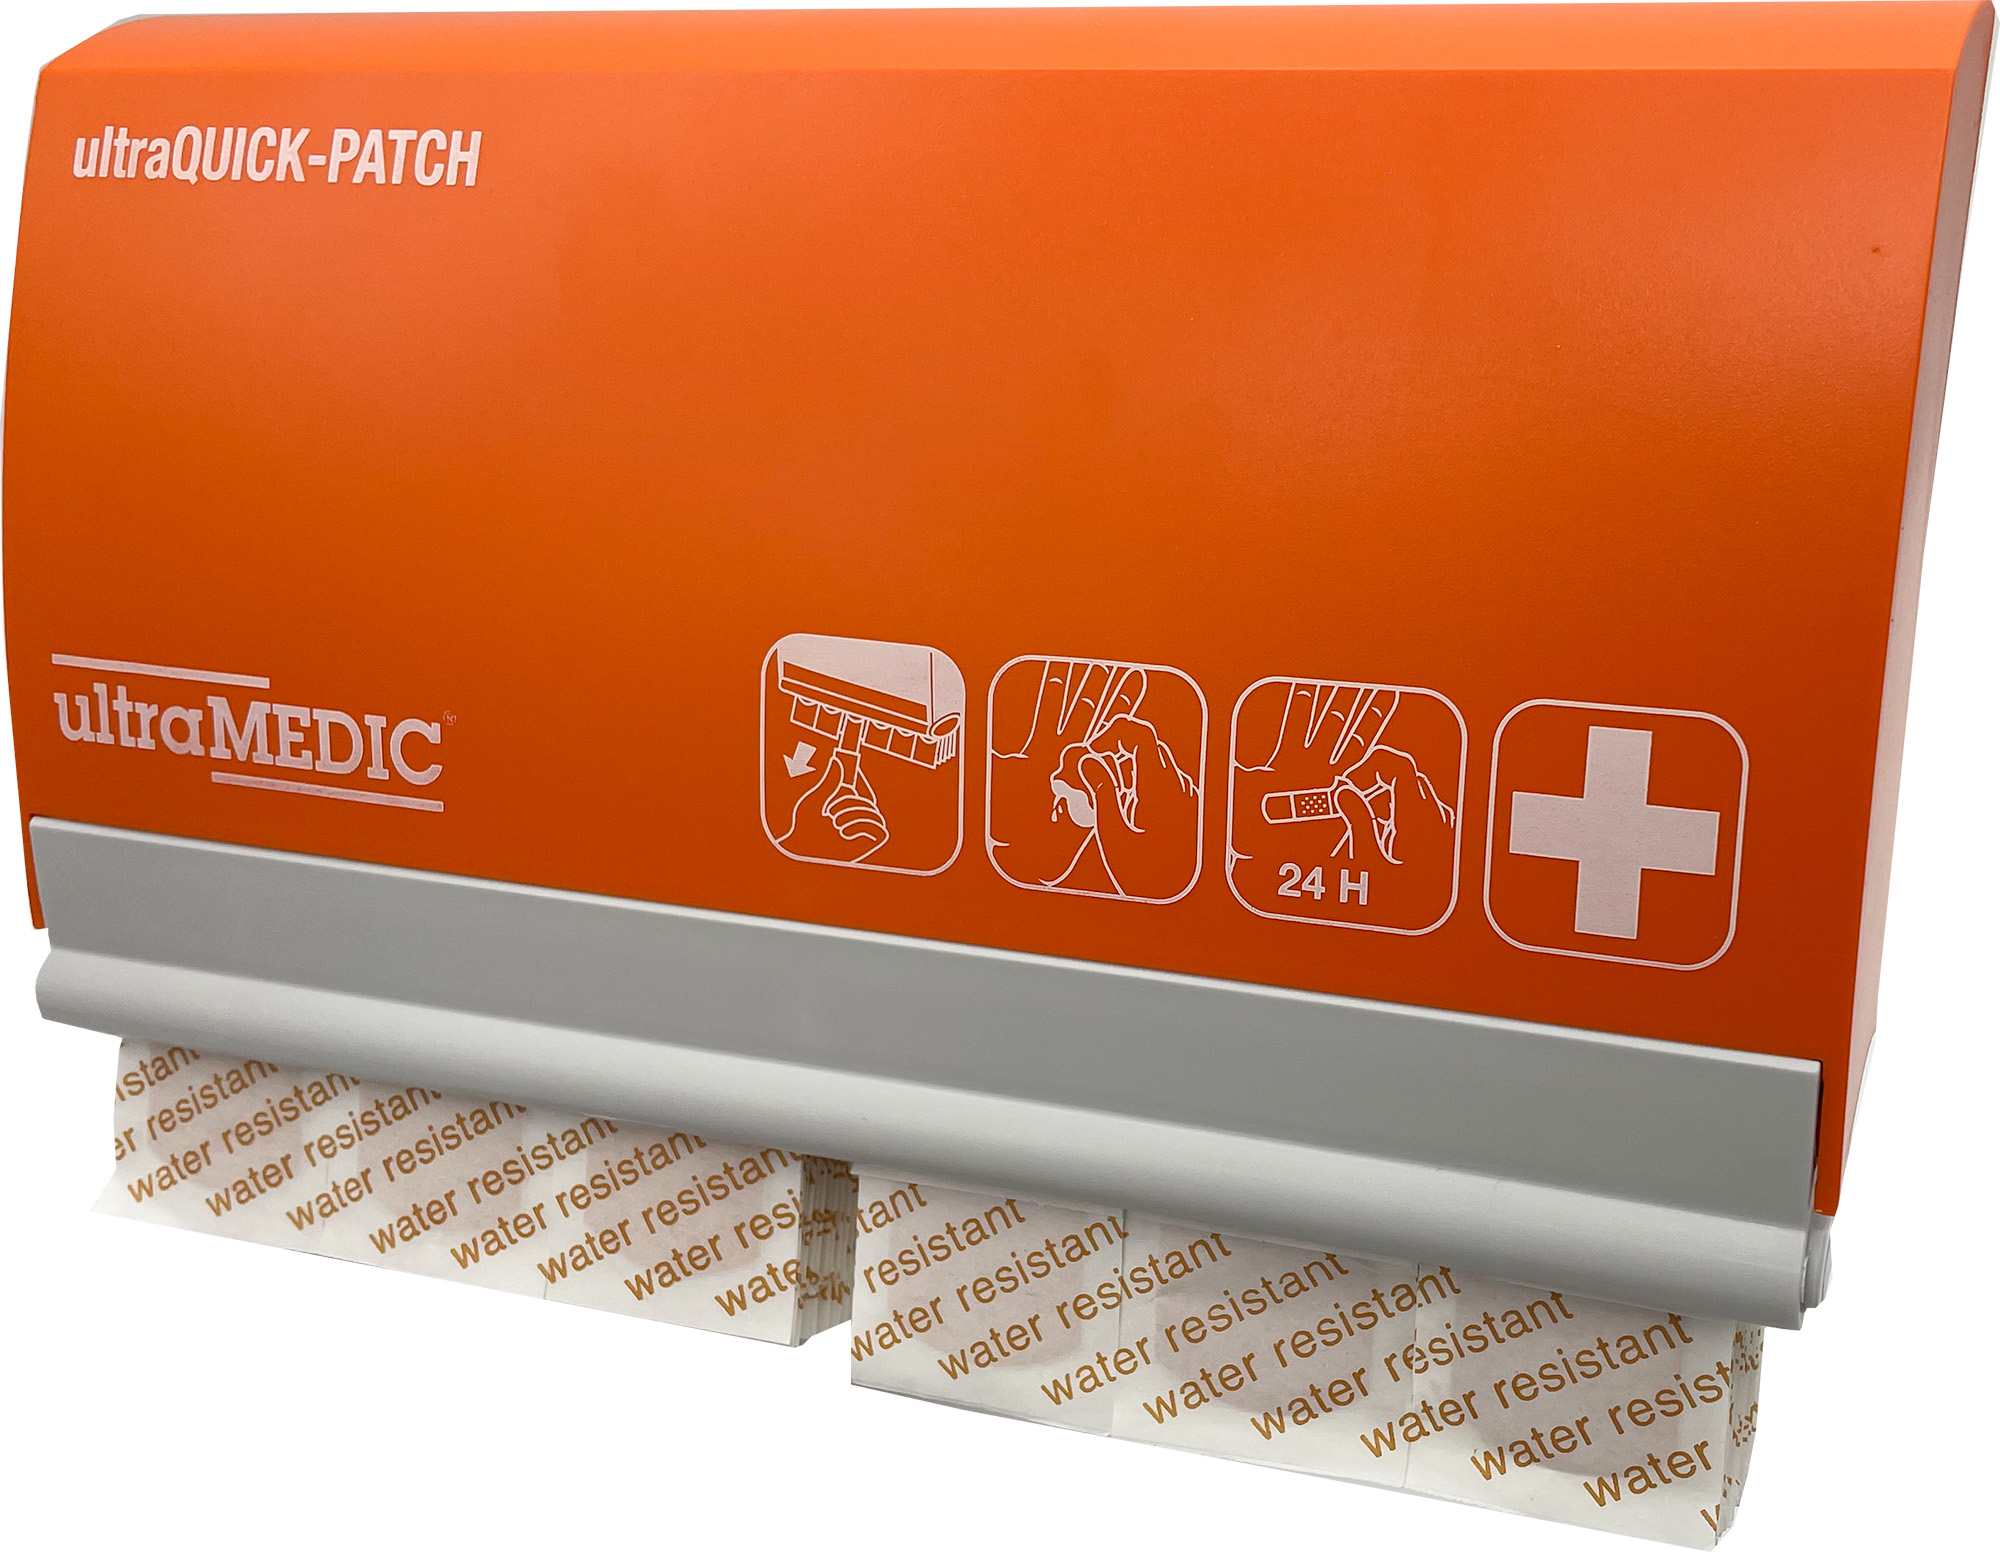 ultraQUICK-PATCH plaster dispenser